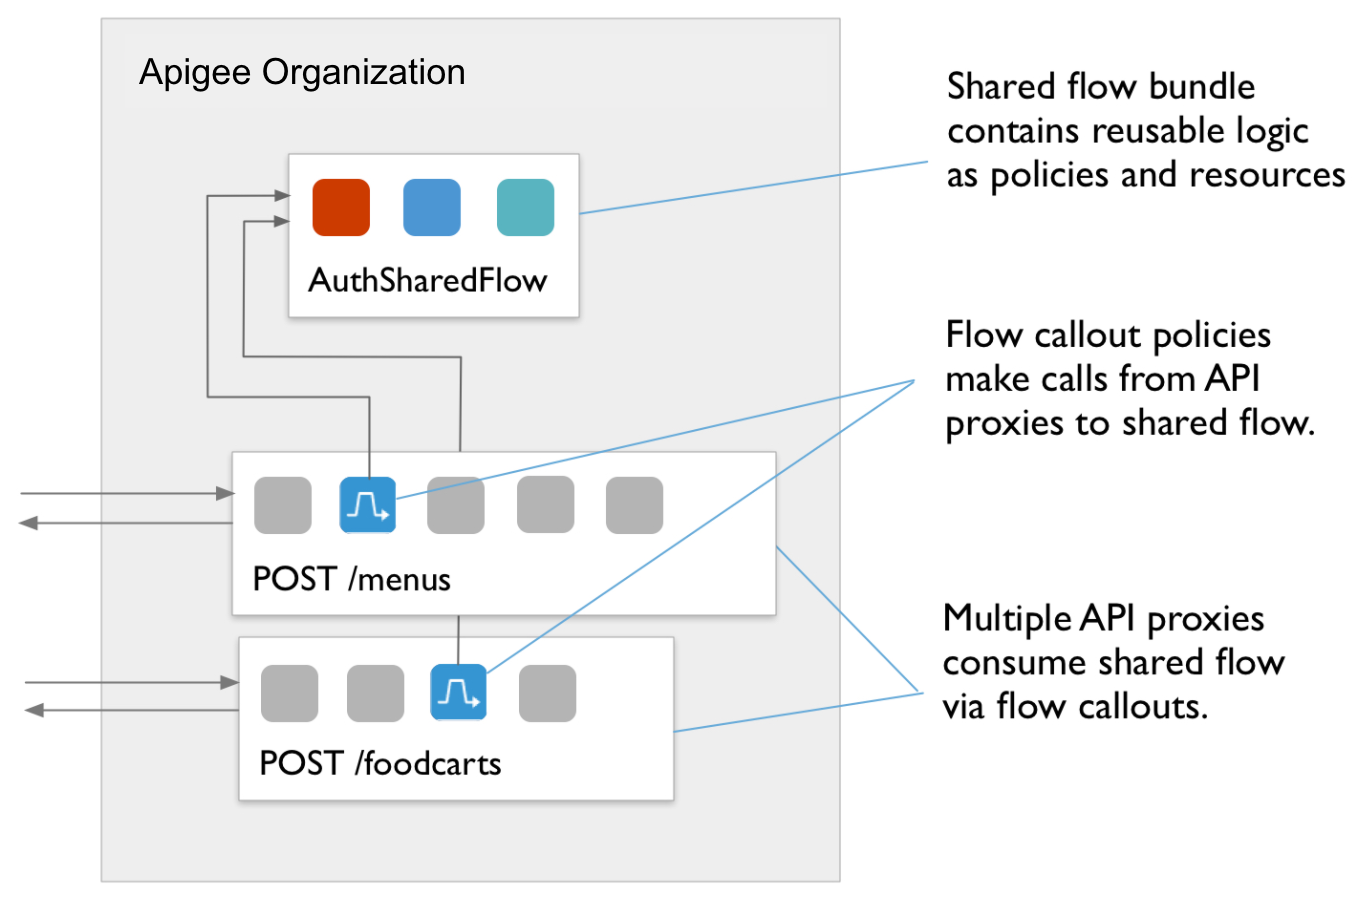 显示 POST /foods 政策至 POST /menus 至 AuthSharedFlow 的流程图。标注文字：
a) 多个 API 代理通过 FlowCallouts 使用共享流。b) FlowCallout 政策从 API 代理调用共享流。c) 共享流软件包包含可重复使用的逻辑作为政策和资源。